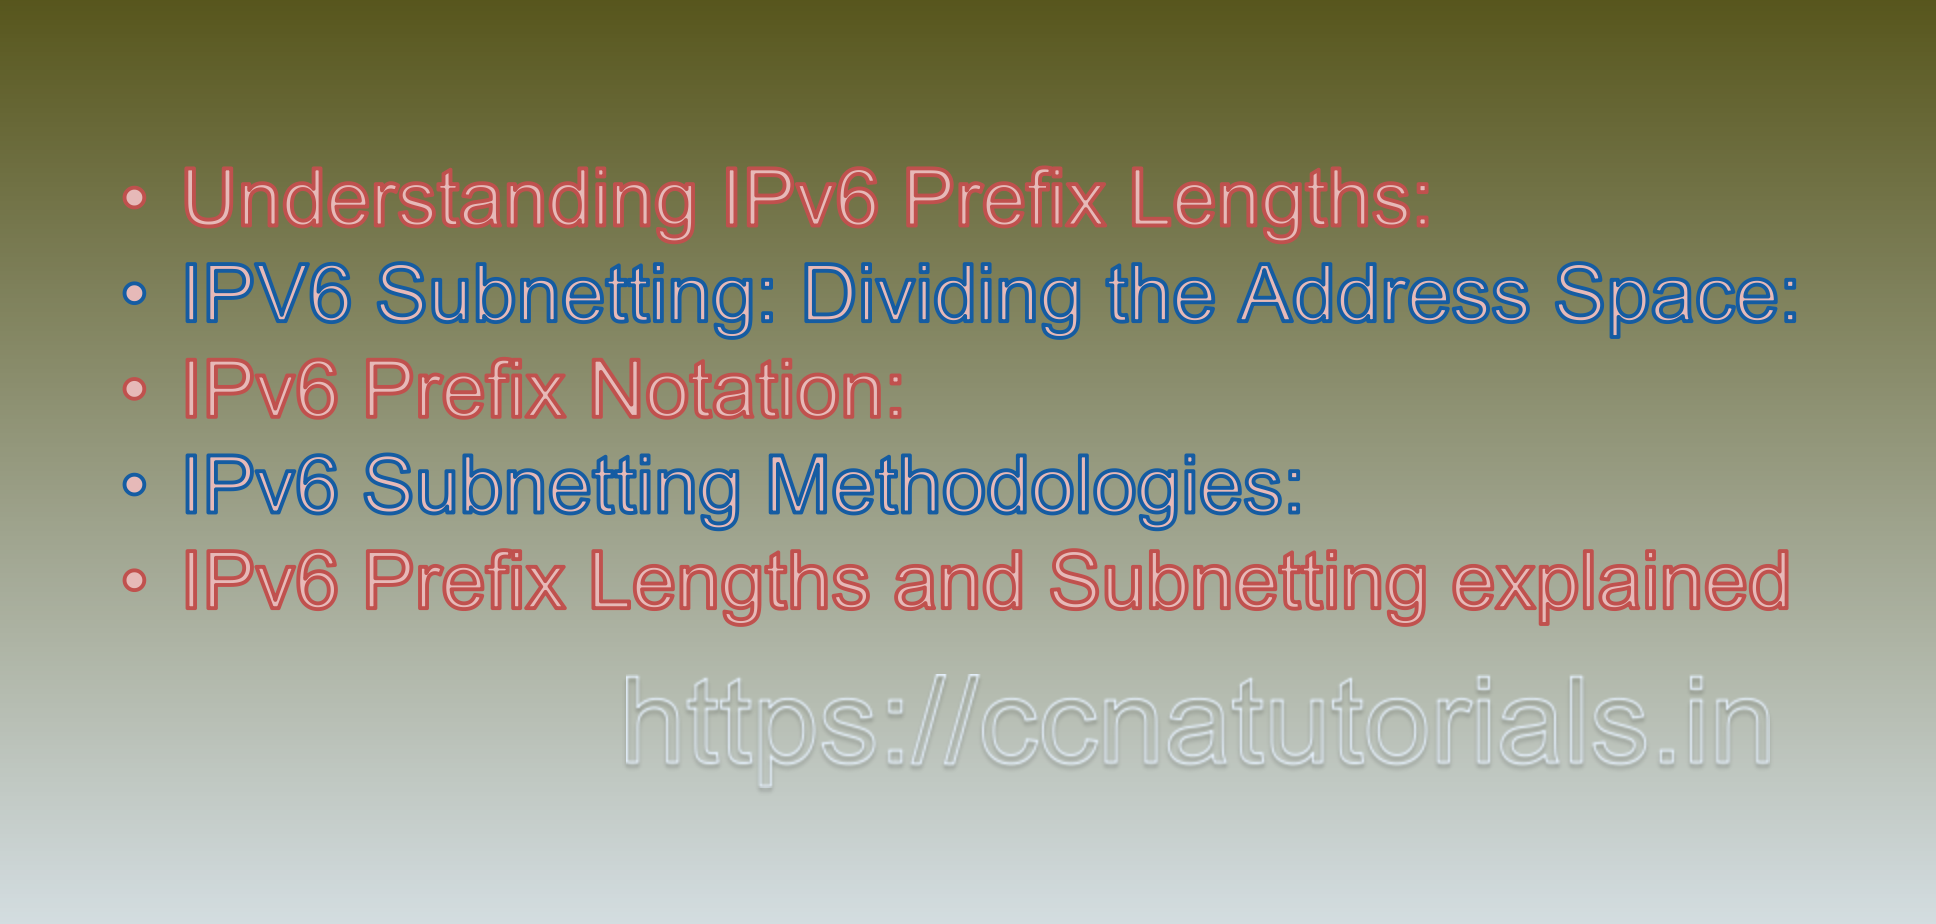 IPv6 Prefix Lengths and Subnetting, ccna, ccna tutorials